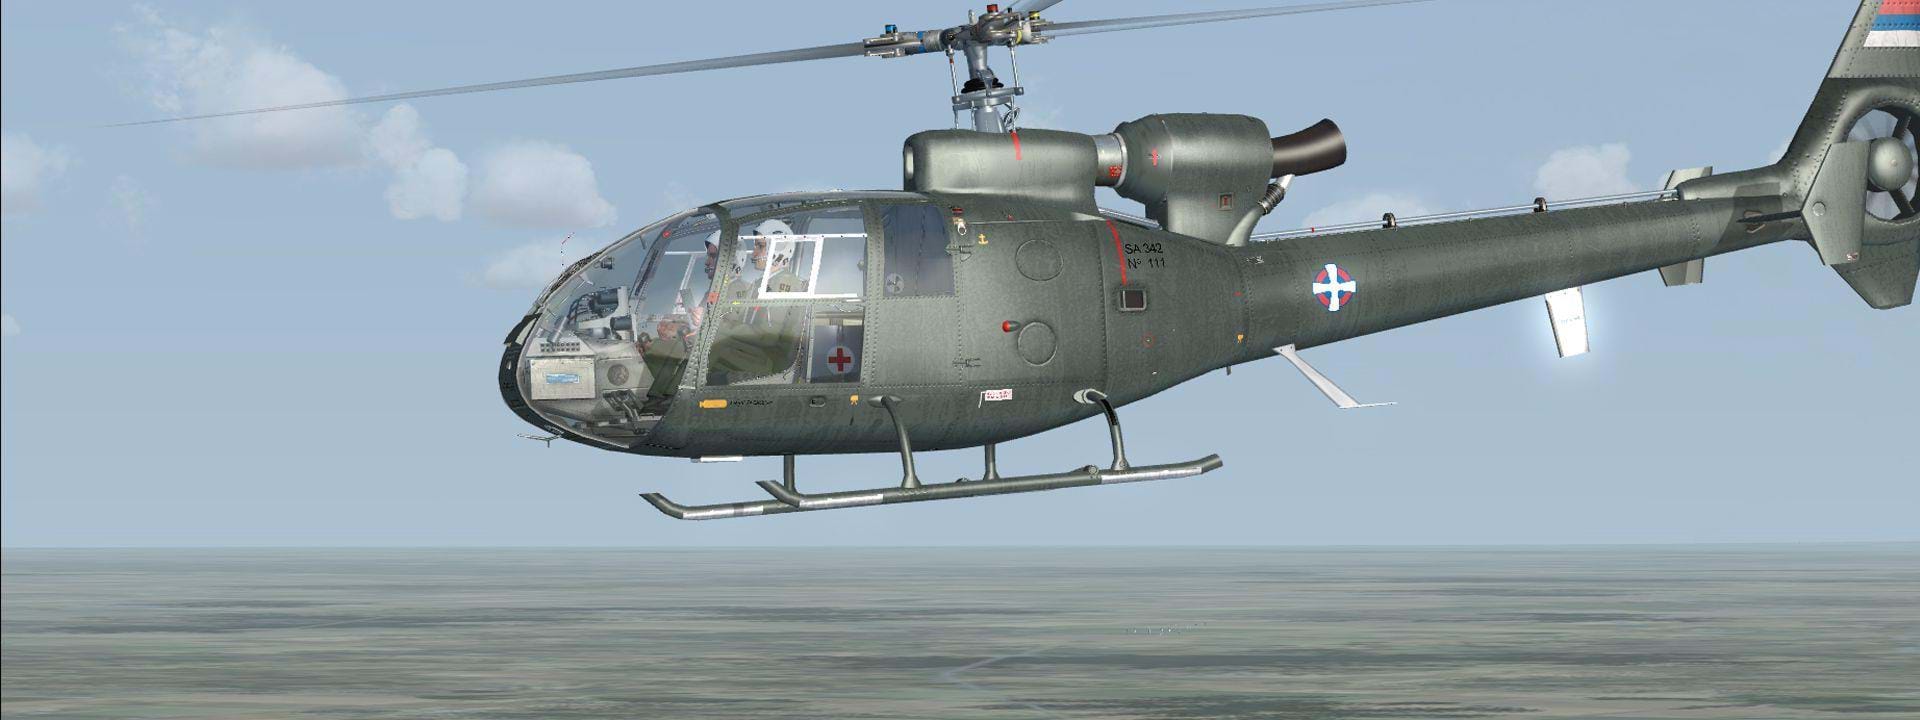 MP Design Studio SA 342 Gazelle - in flight